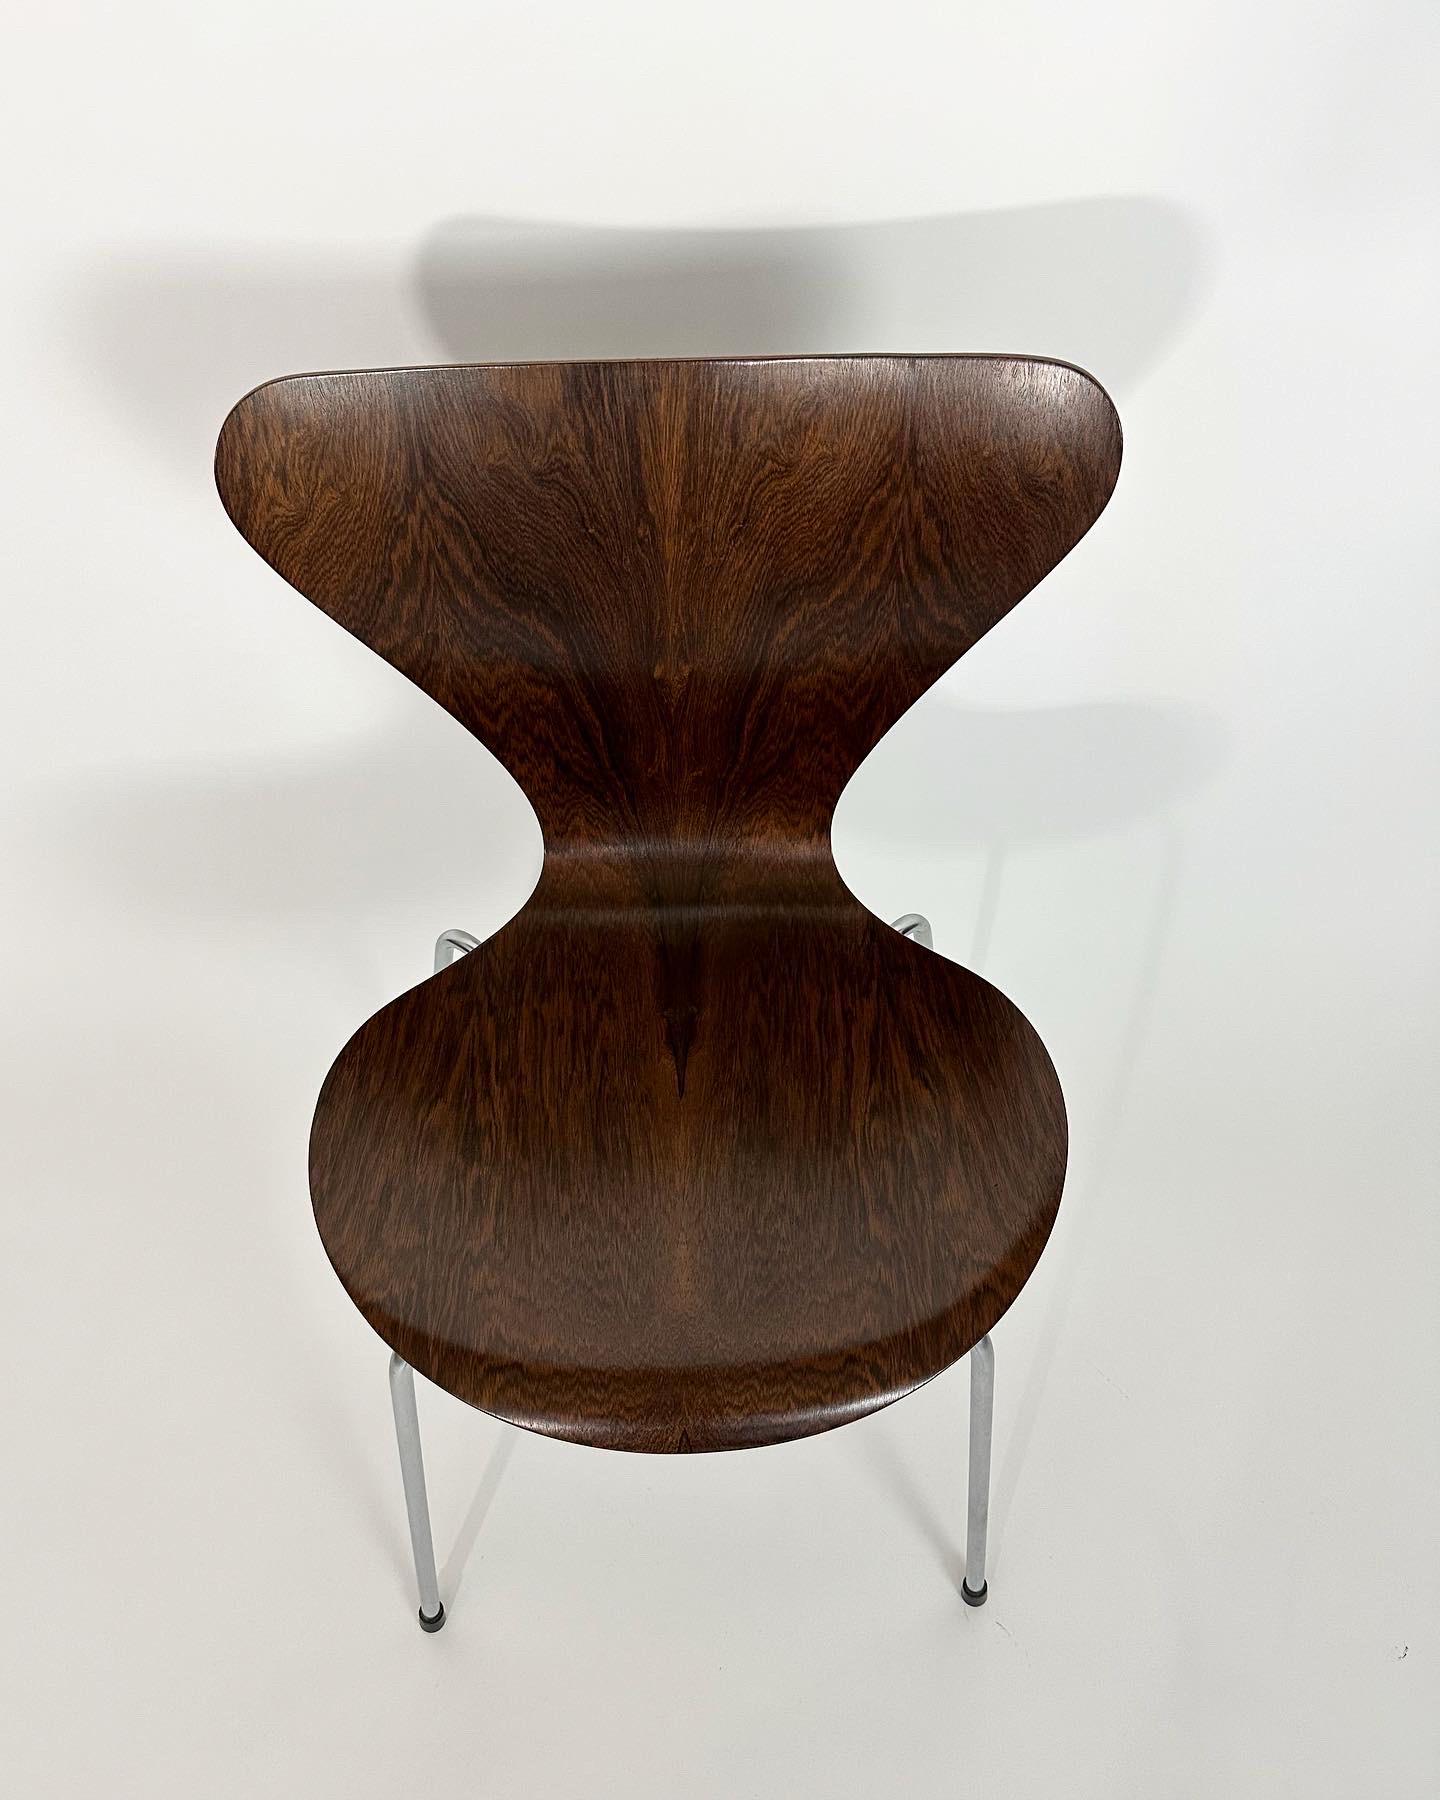 Seltener Arne Jacobsen 'Serie 7' Stuhl aus Palisanderholz, Modell Nr. 3107 für Fritz Hansen, hergestellt 1968.

Aus geformtem Palisander-Sperrholz mit wunderschönem, stark gemasertem Furnier, Stahlgestell mit schwarzen Gleitern. 

Sehr guter